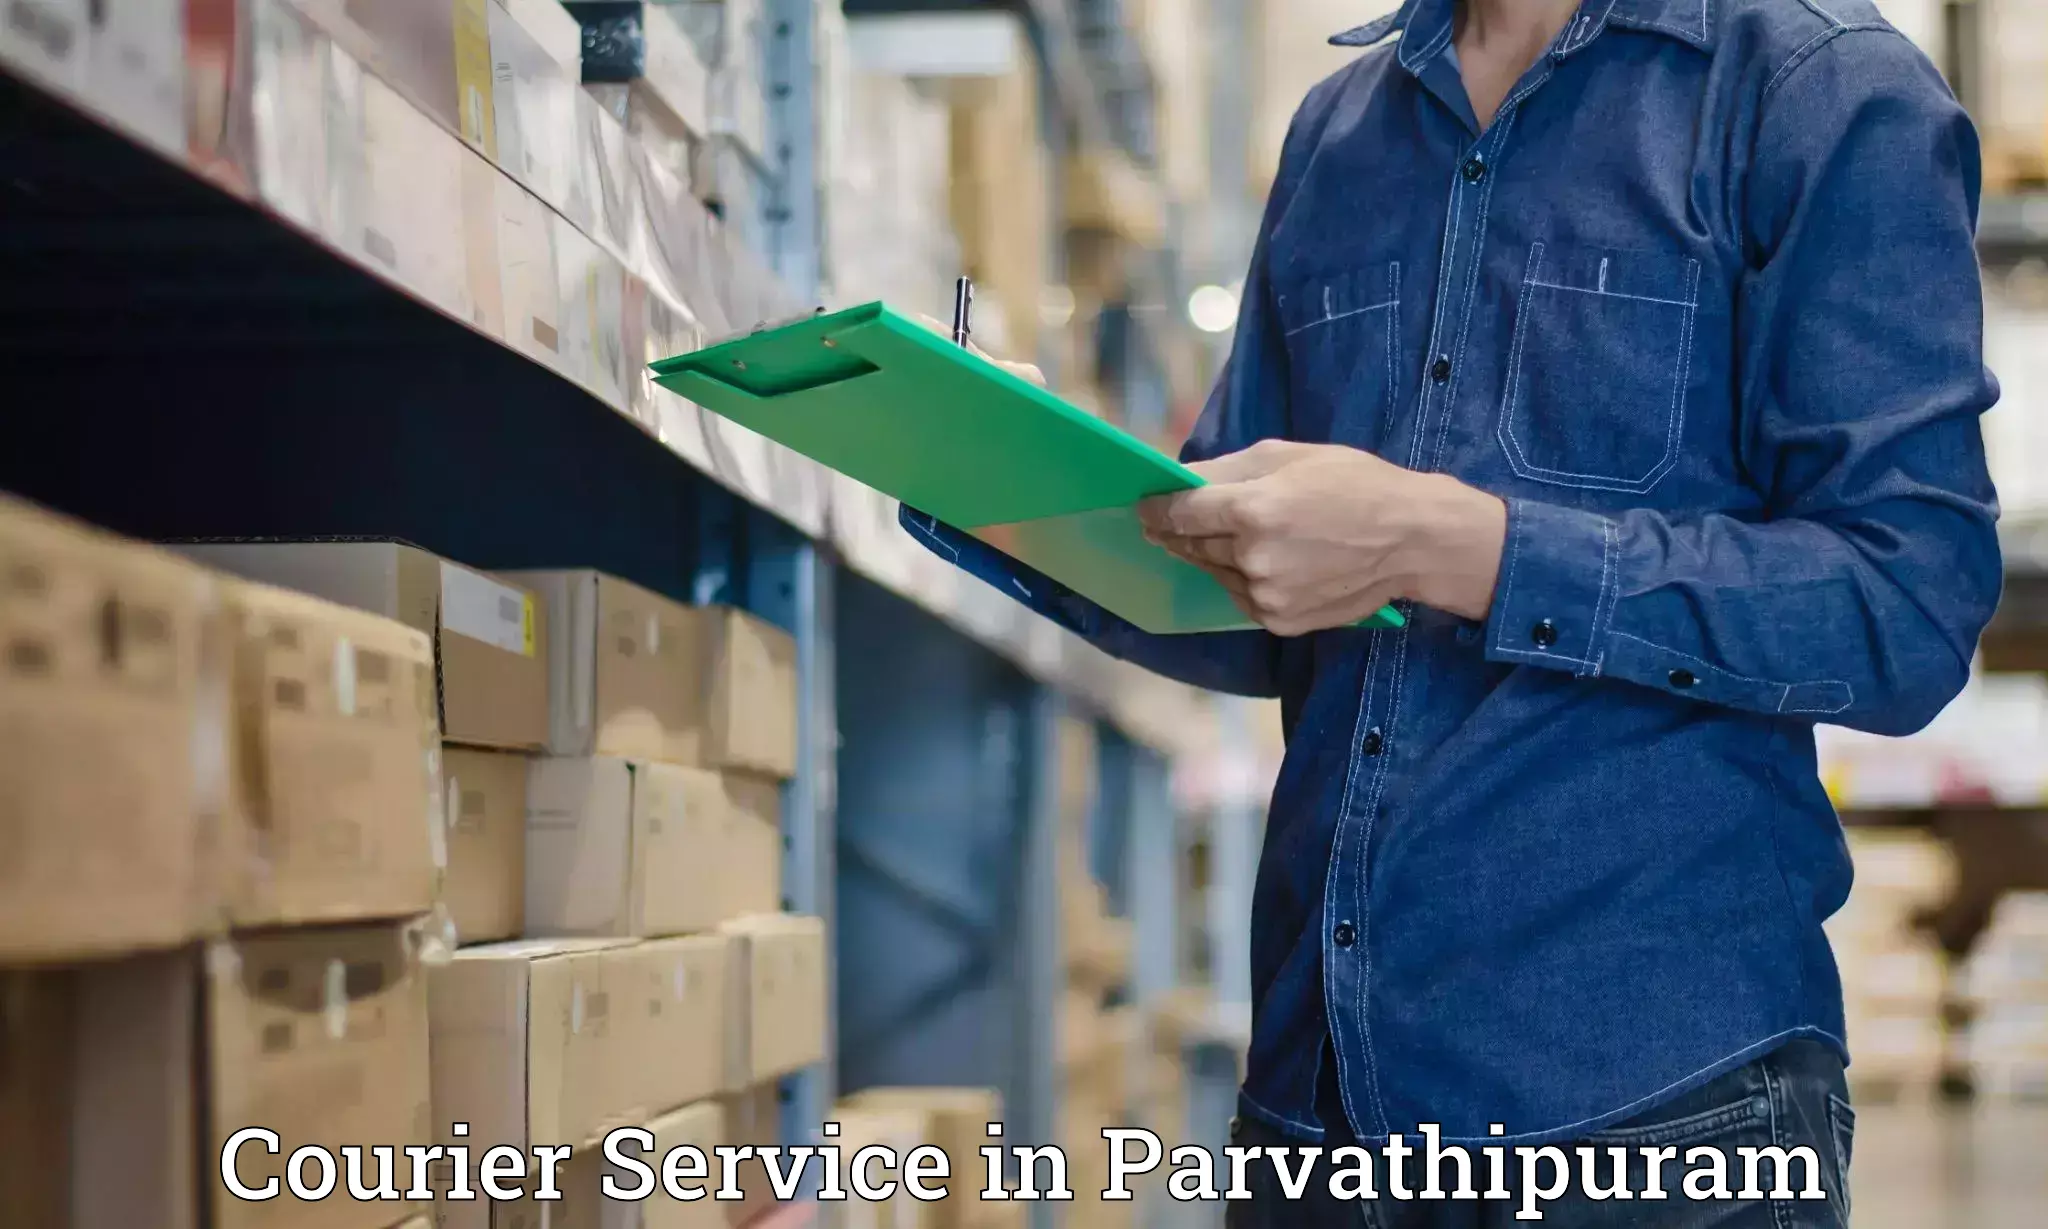 Smart shipping technology in Parvathipuram